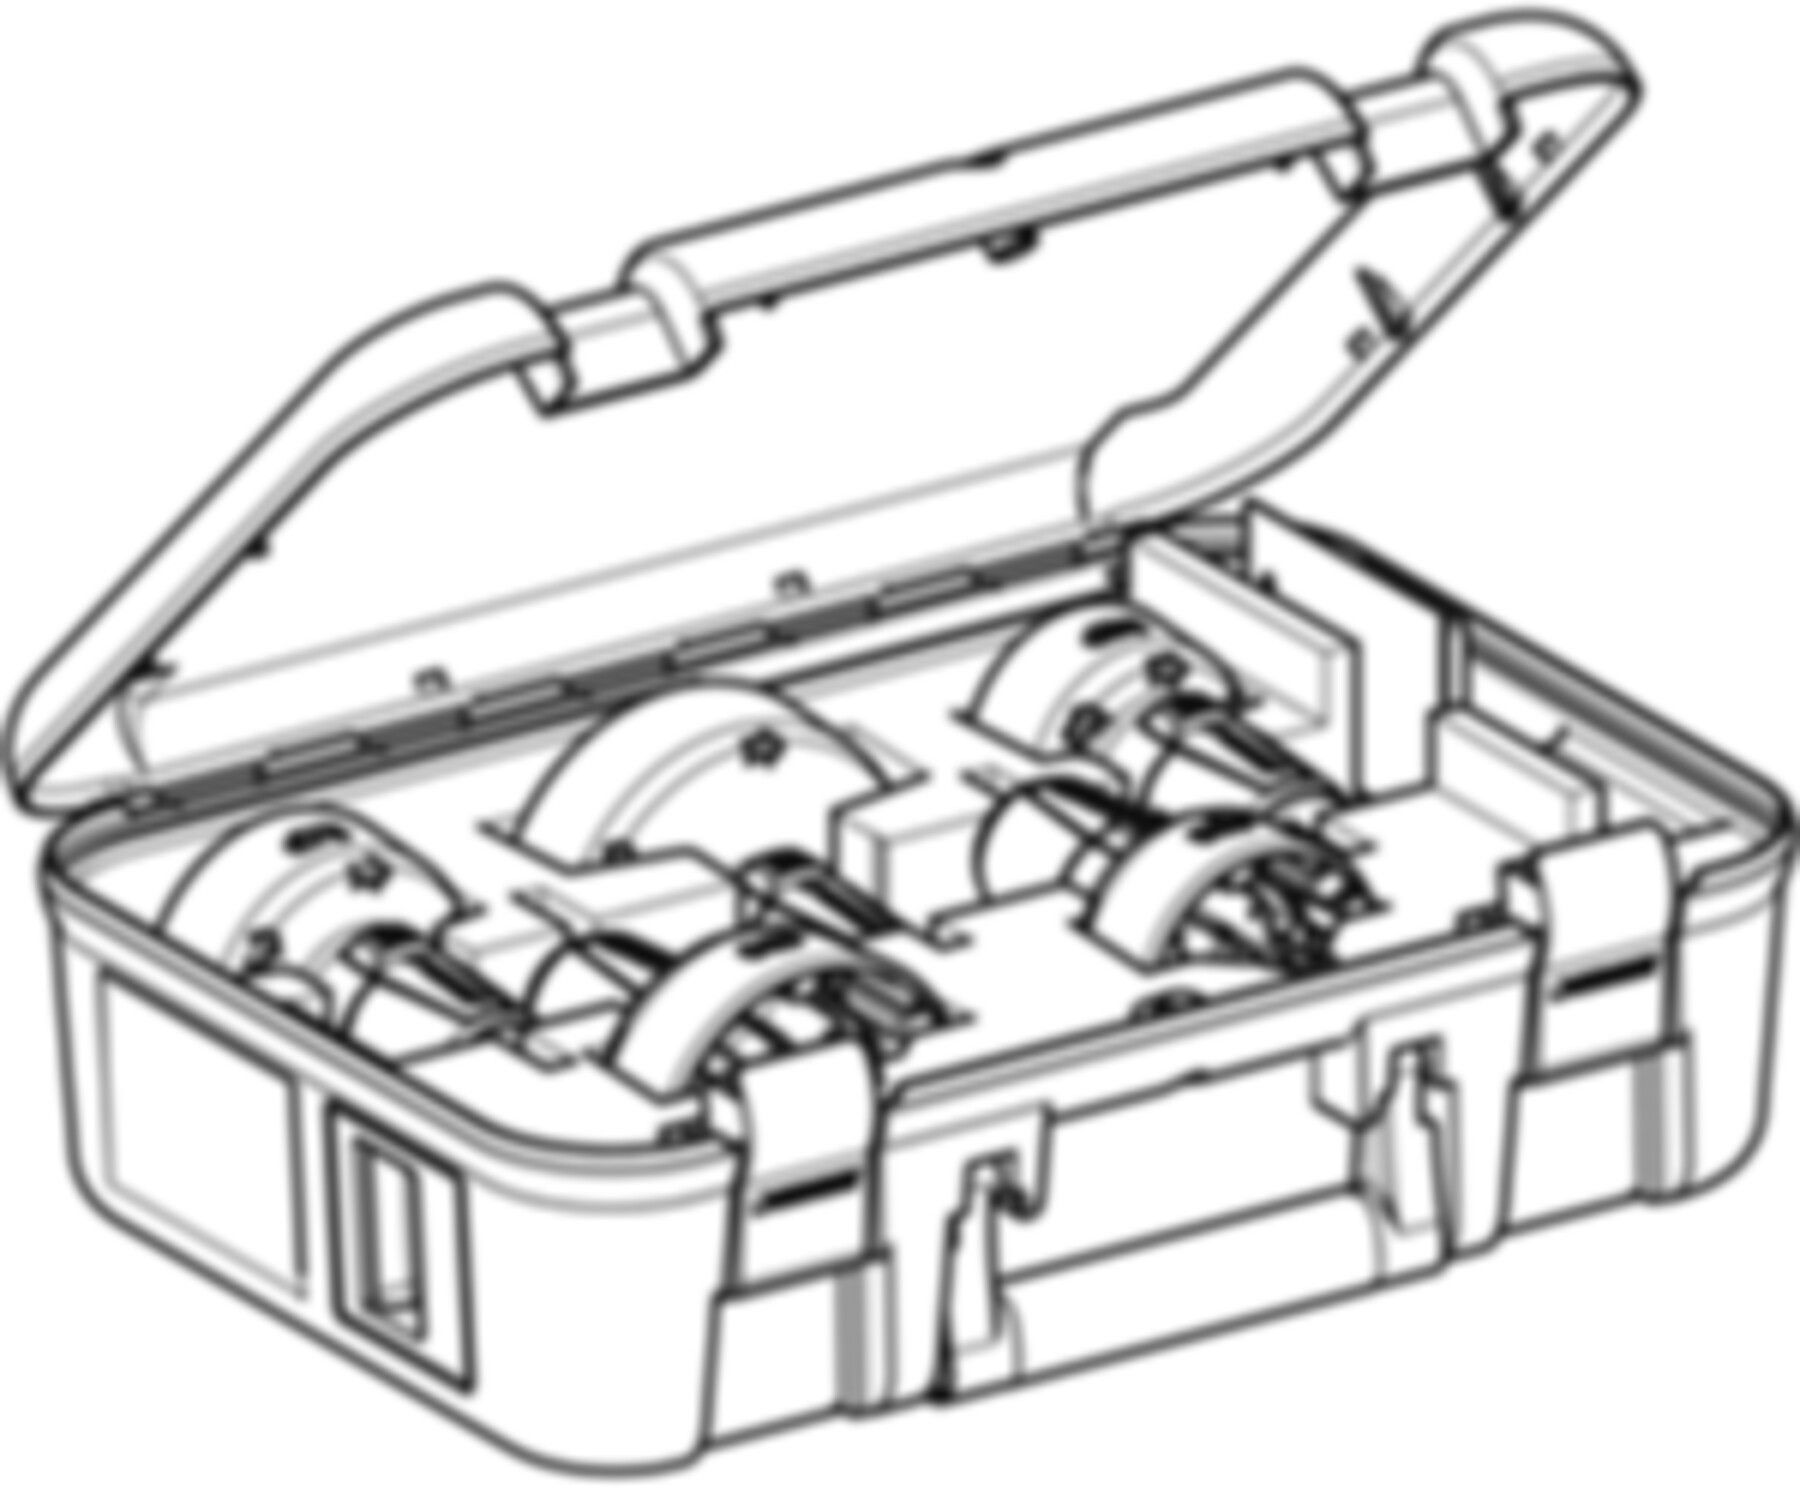 Set Rohrschaber in Koffer 56-110mm 359.916.00.1 für PE und Silent - Geberit Werkzeuge und Zubehör